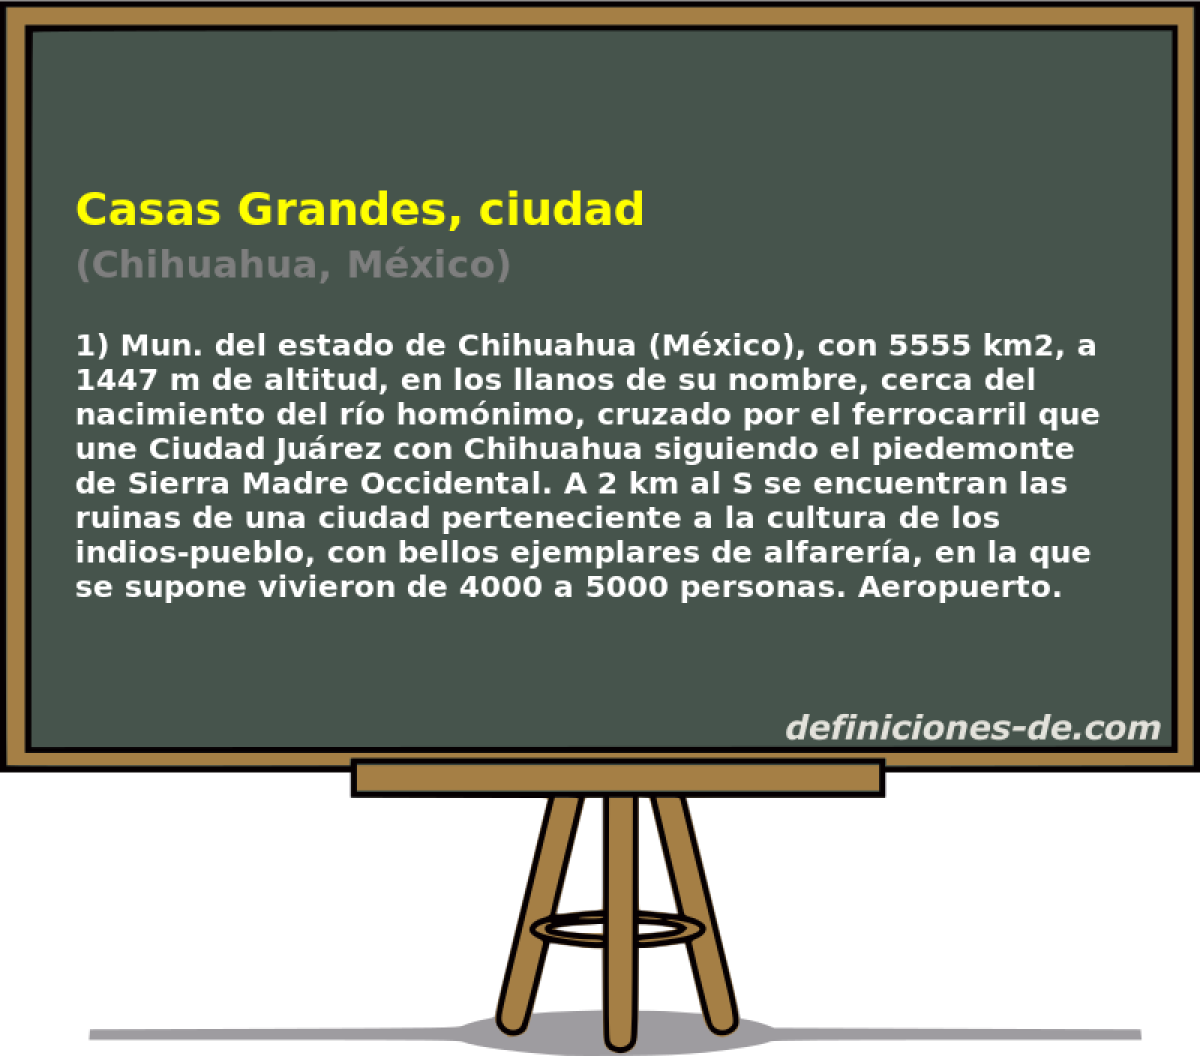 Casas Grandes, ciudad (Chihuahua, Mxico)